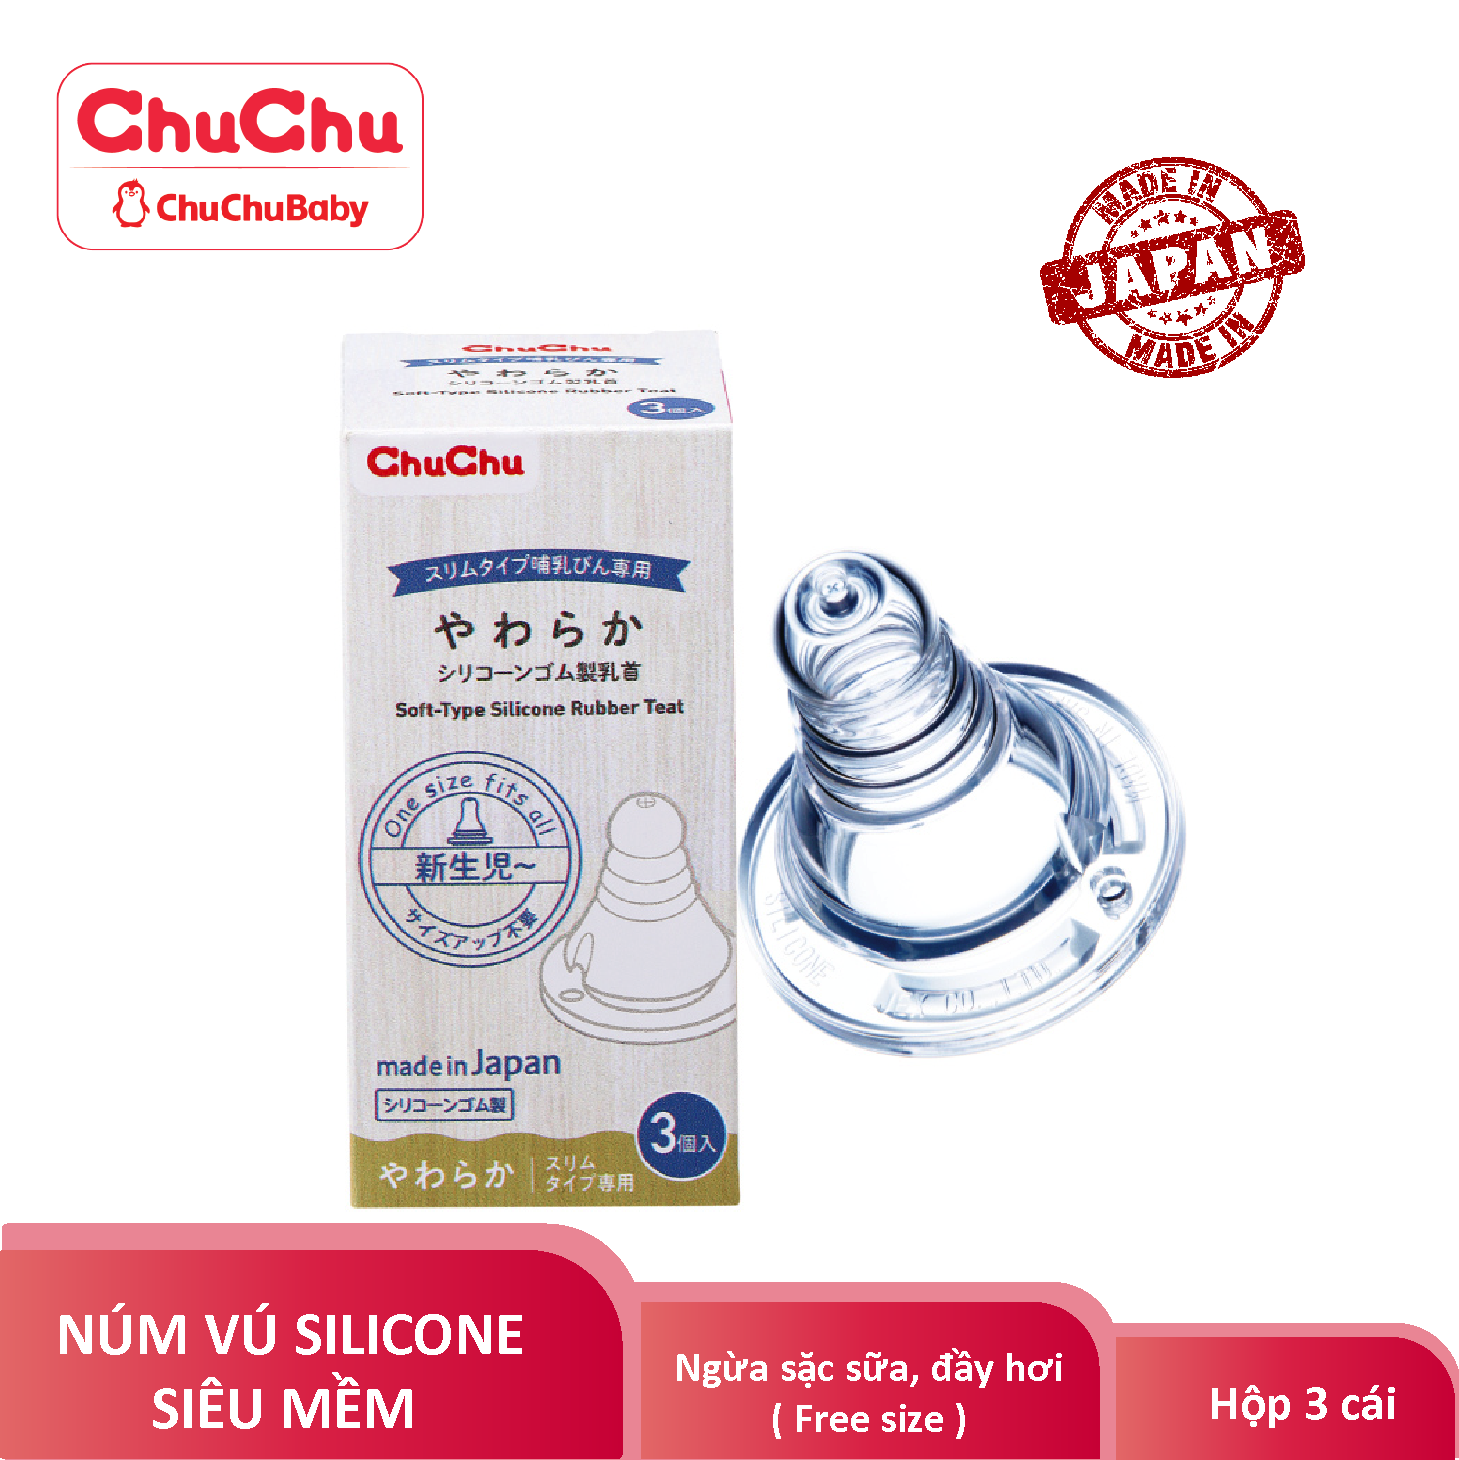 HCM Núm ty bình sữa cổ thường silicon siêu mềm Chuchu baby hộp 3 cái chính